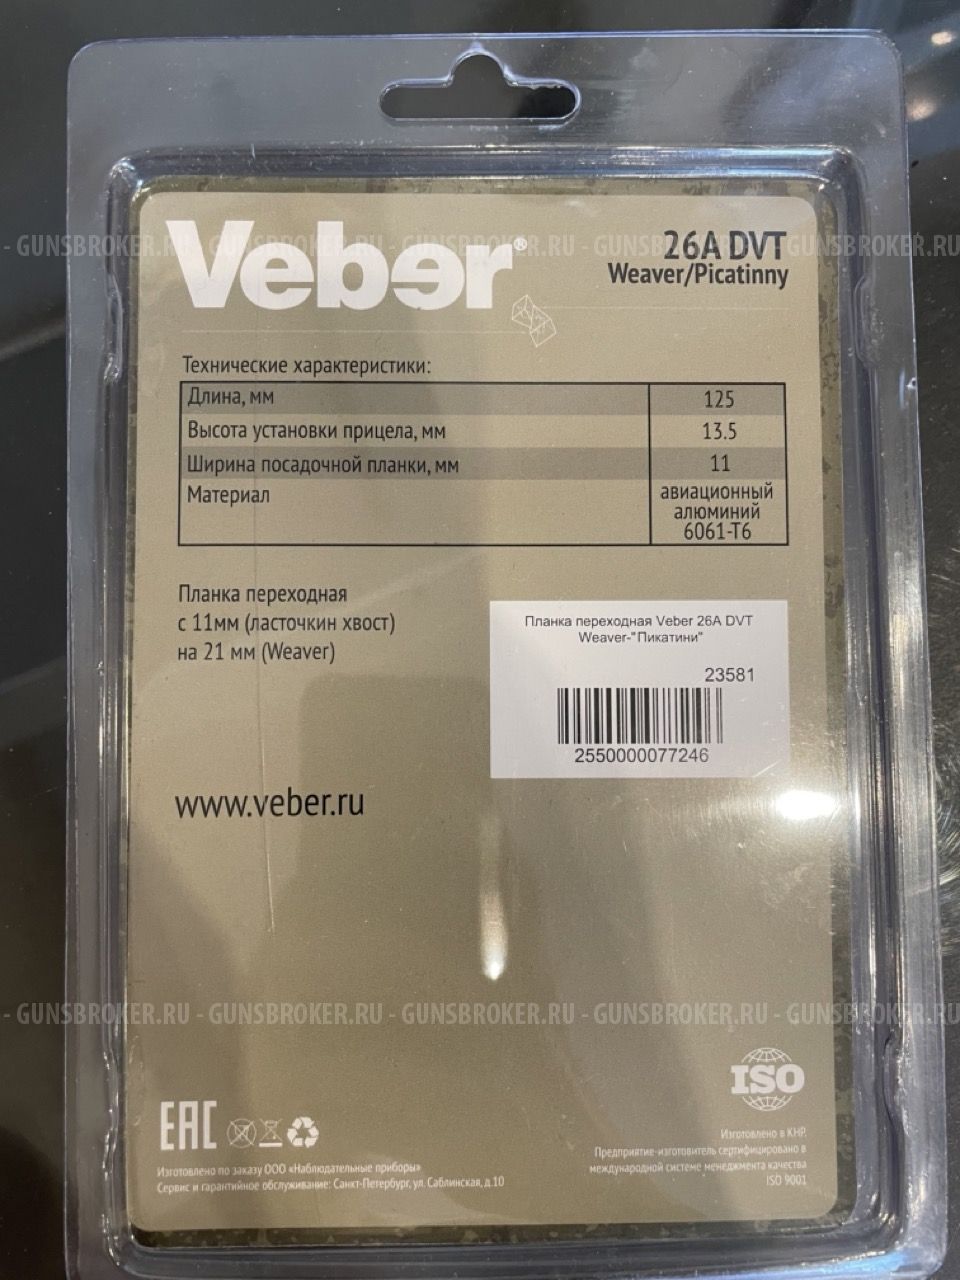 Планка переходная Veber 26A DVT Weaver-"Пикатини" ласточкин хвост